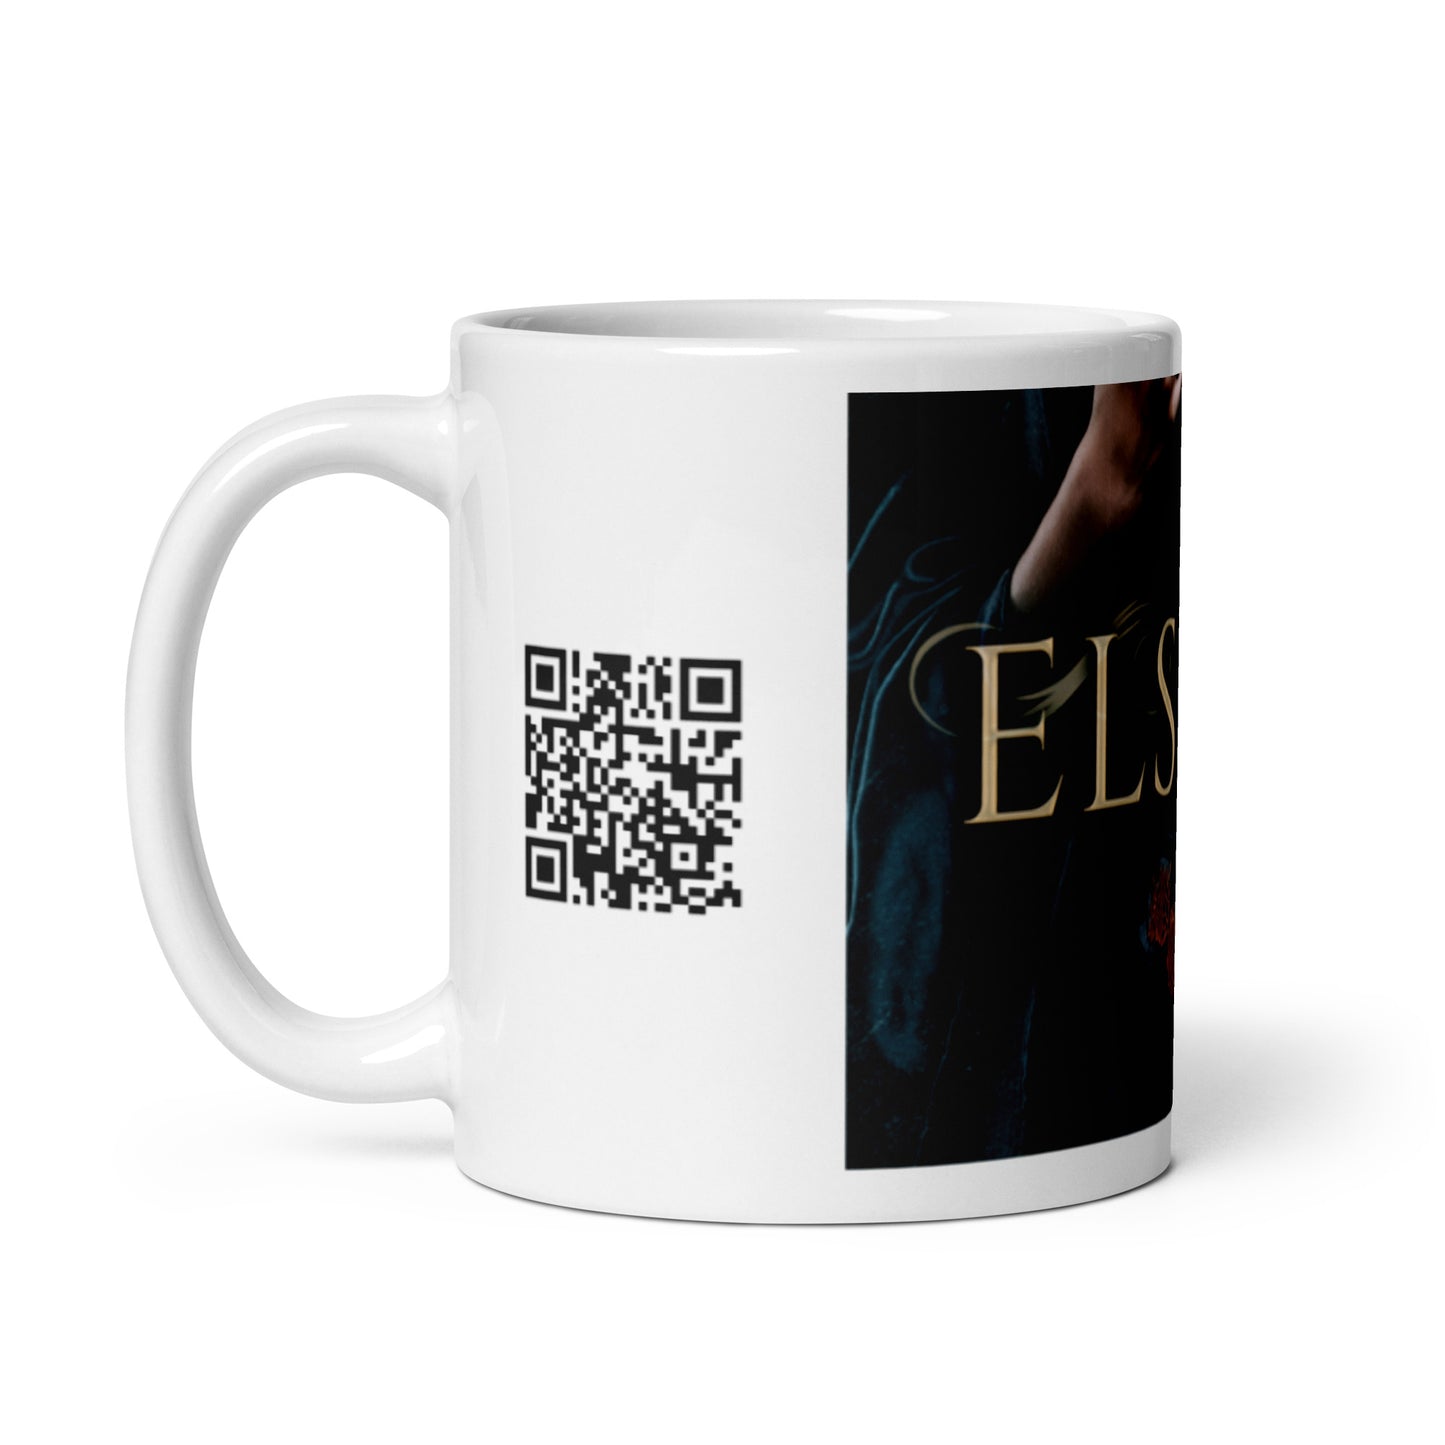 Elspeth - White Coffee Mug